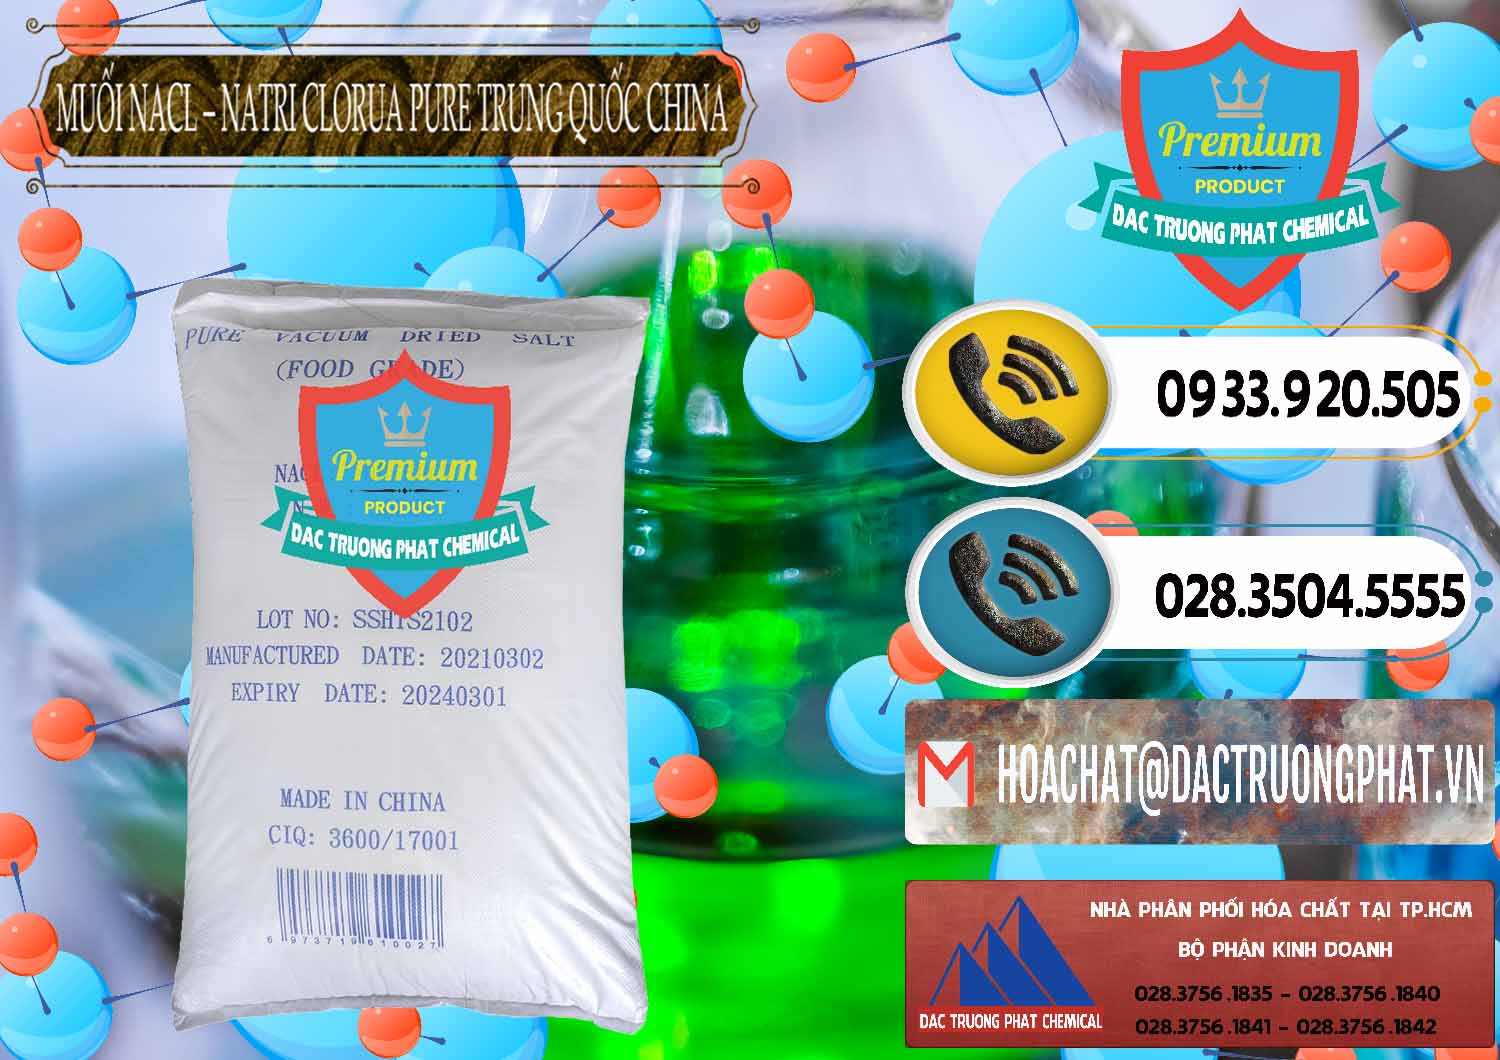 Nơi chuyên kinh doanh & bán Muối NaCL – Sodium Chloride Pure Trung Quốc China - 0230 - Nơi chuyên cung cấp - kinh doanh hóa chất tại TP.HCM - hoachatdetnhuom.vn